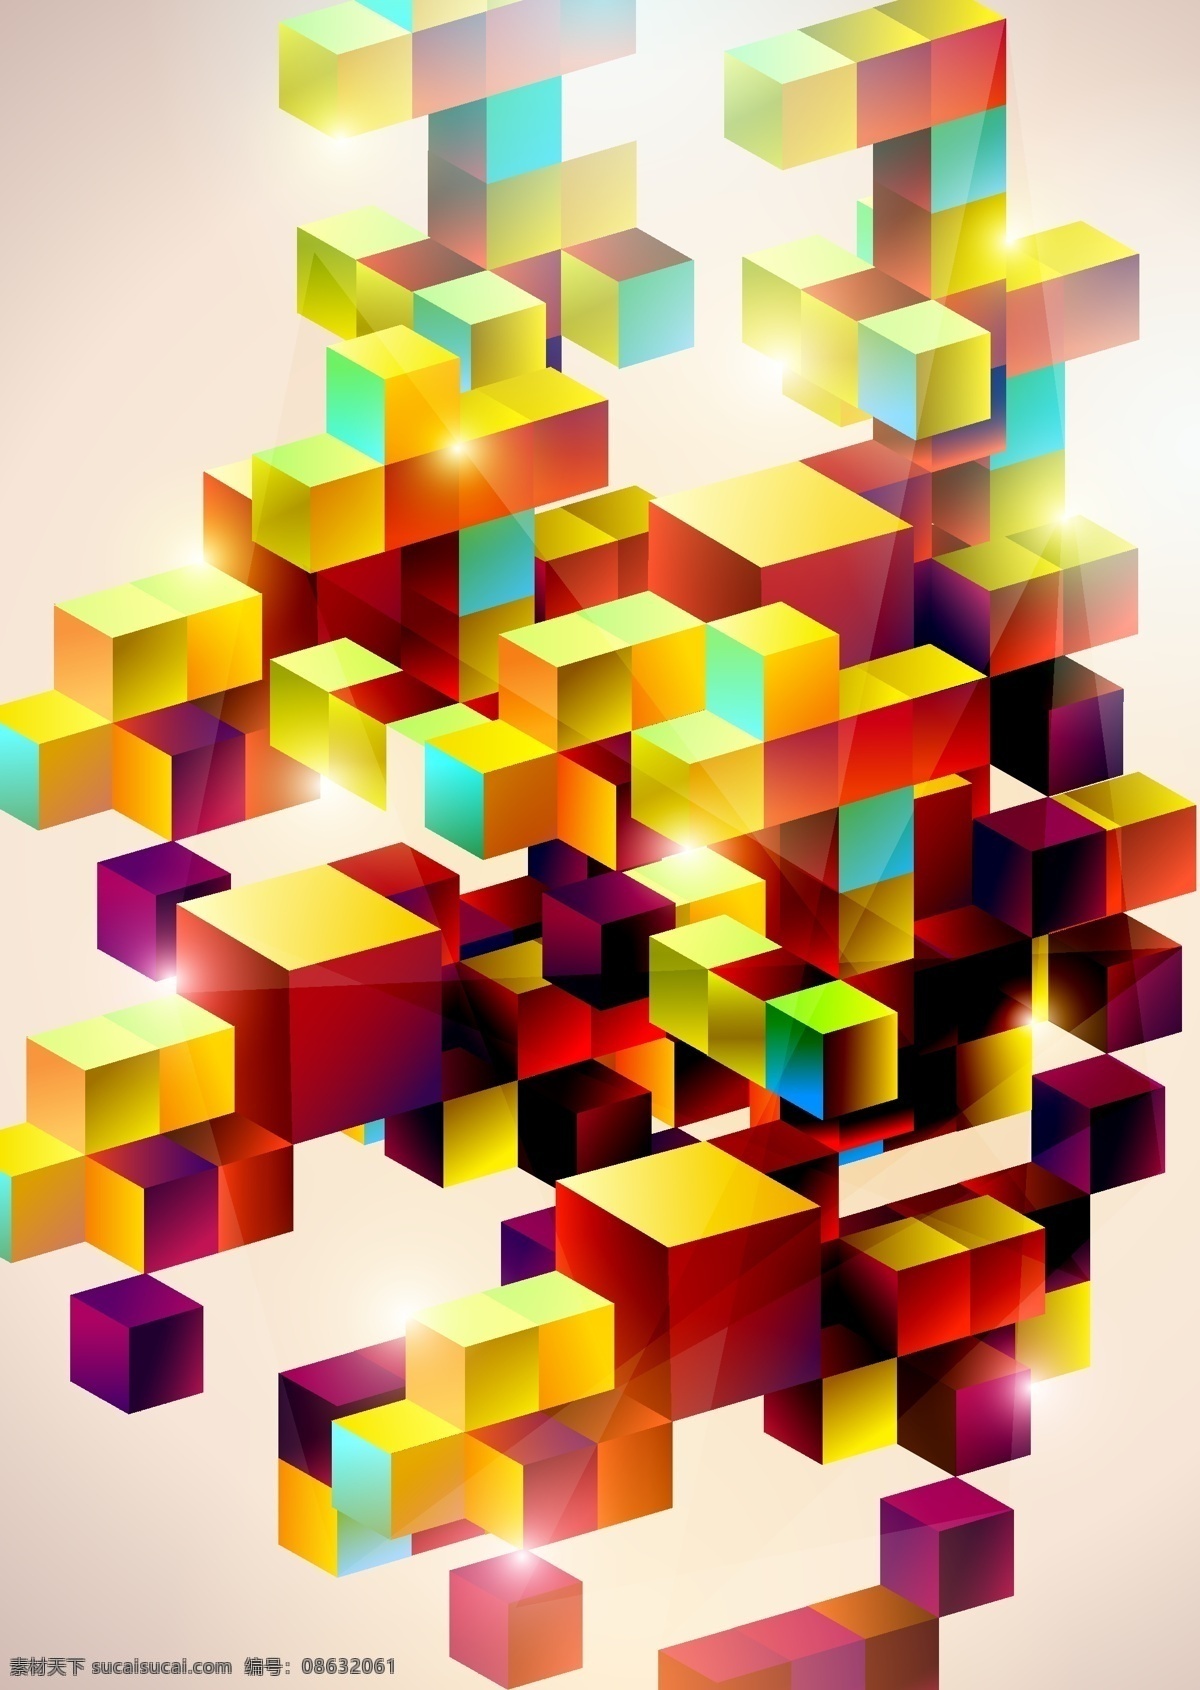 色彩 方块 矢量 背景 背景图 创意空间 空间设计 立体方块 立体空间 模板 三维 设计稿 素材元素 色彩方块 源文件 矢量图